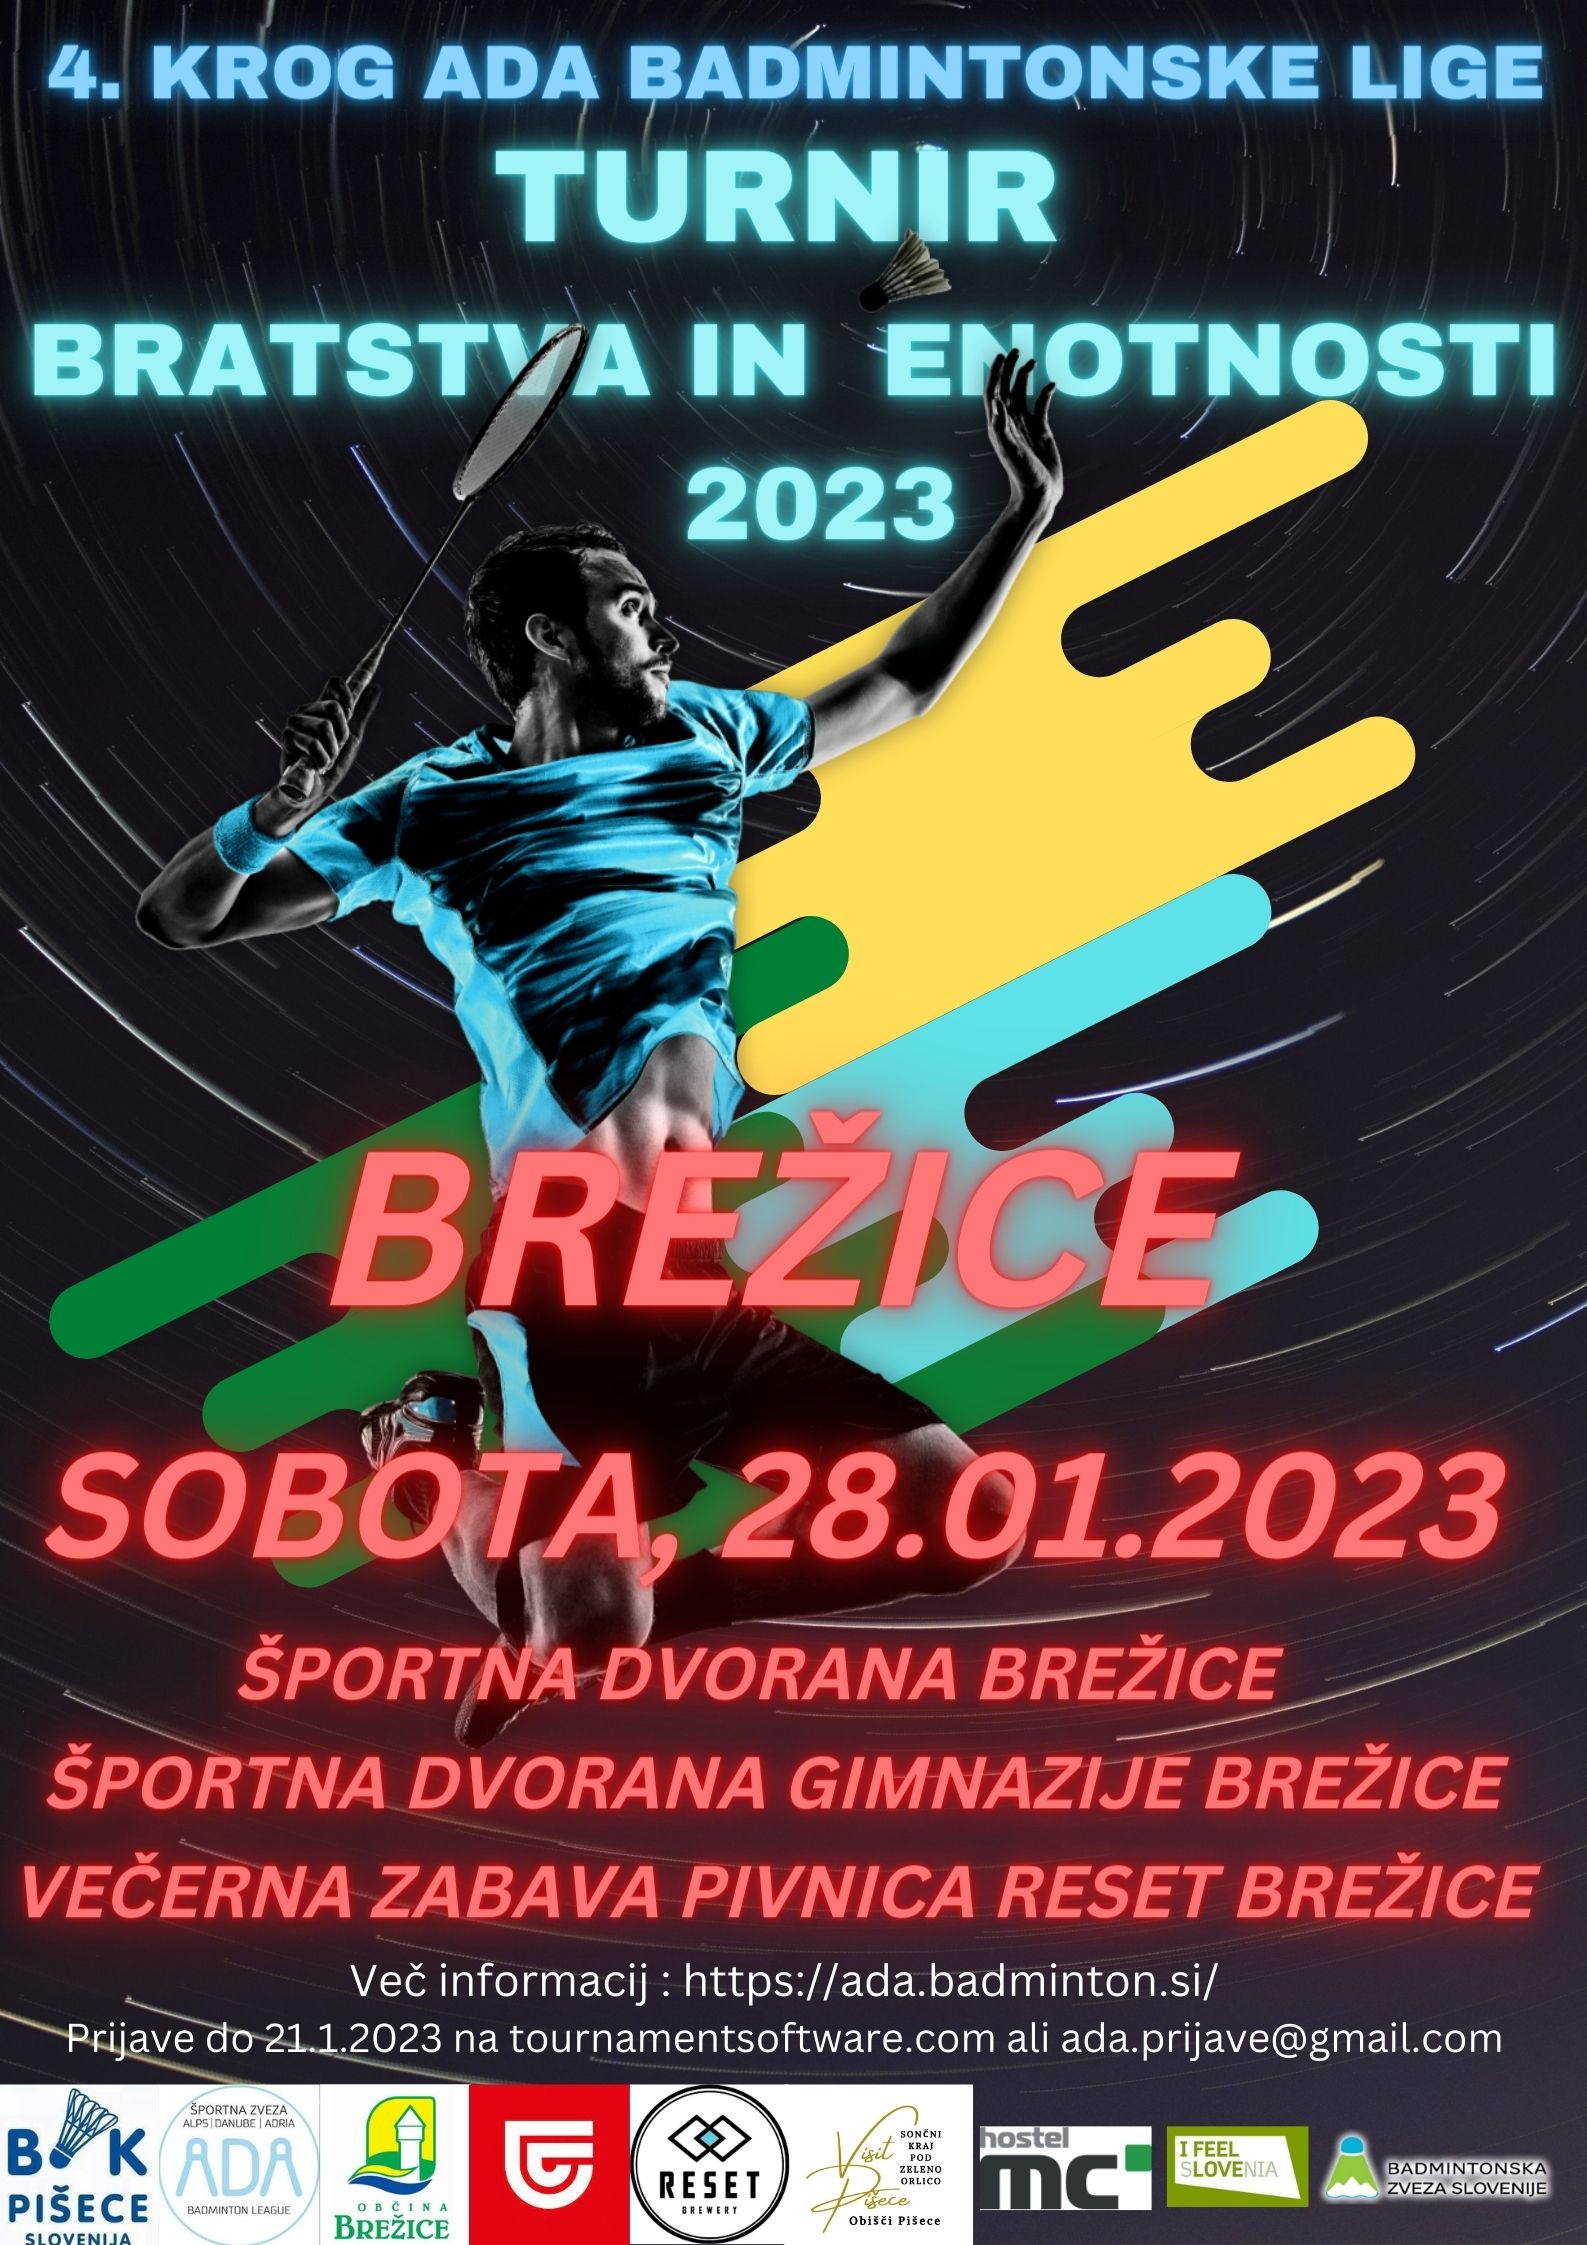 Turnir bratstva in enotnosti 2023